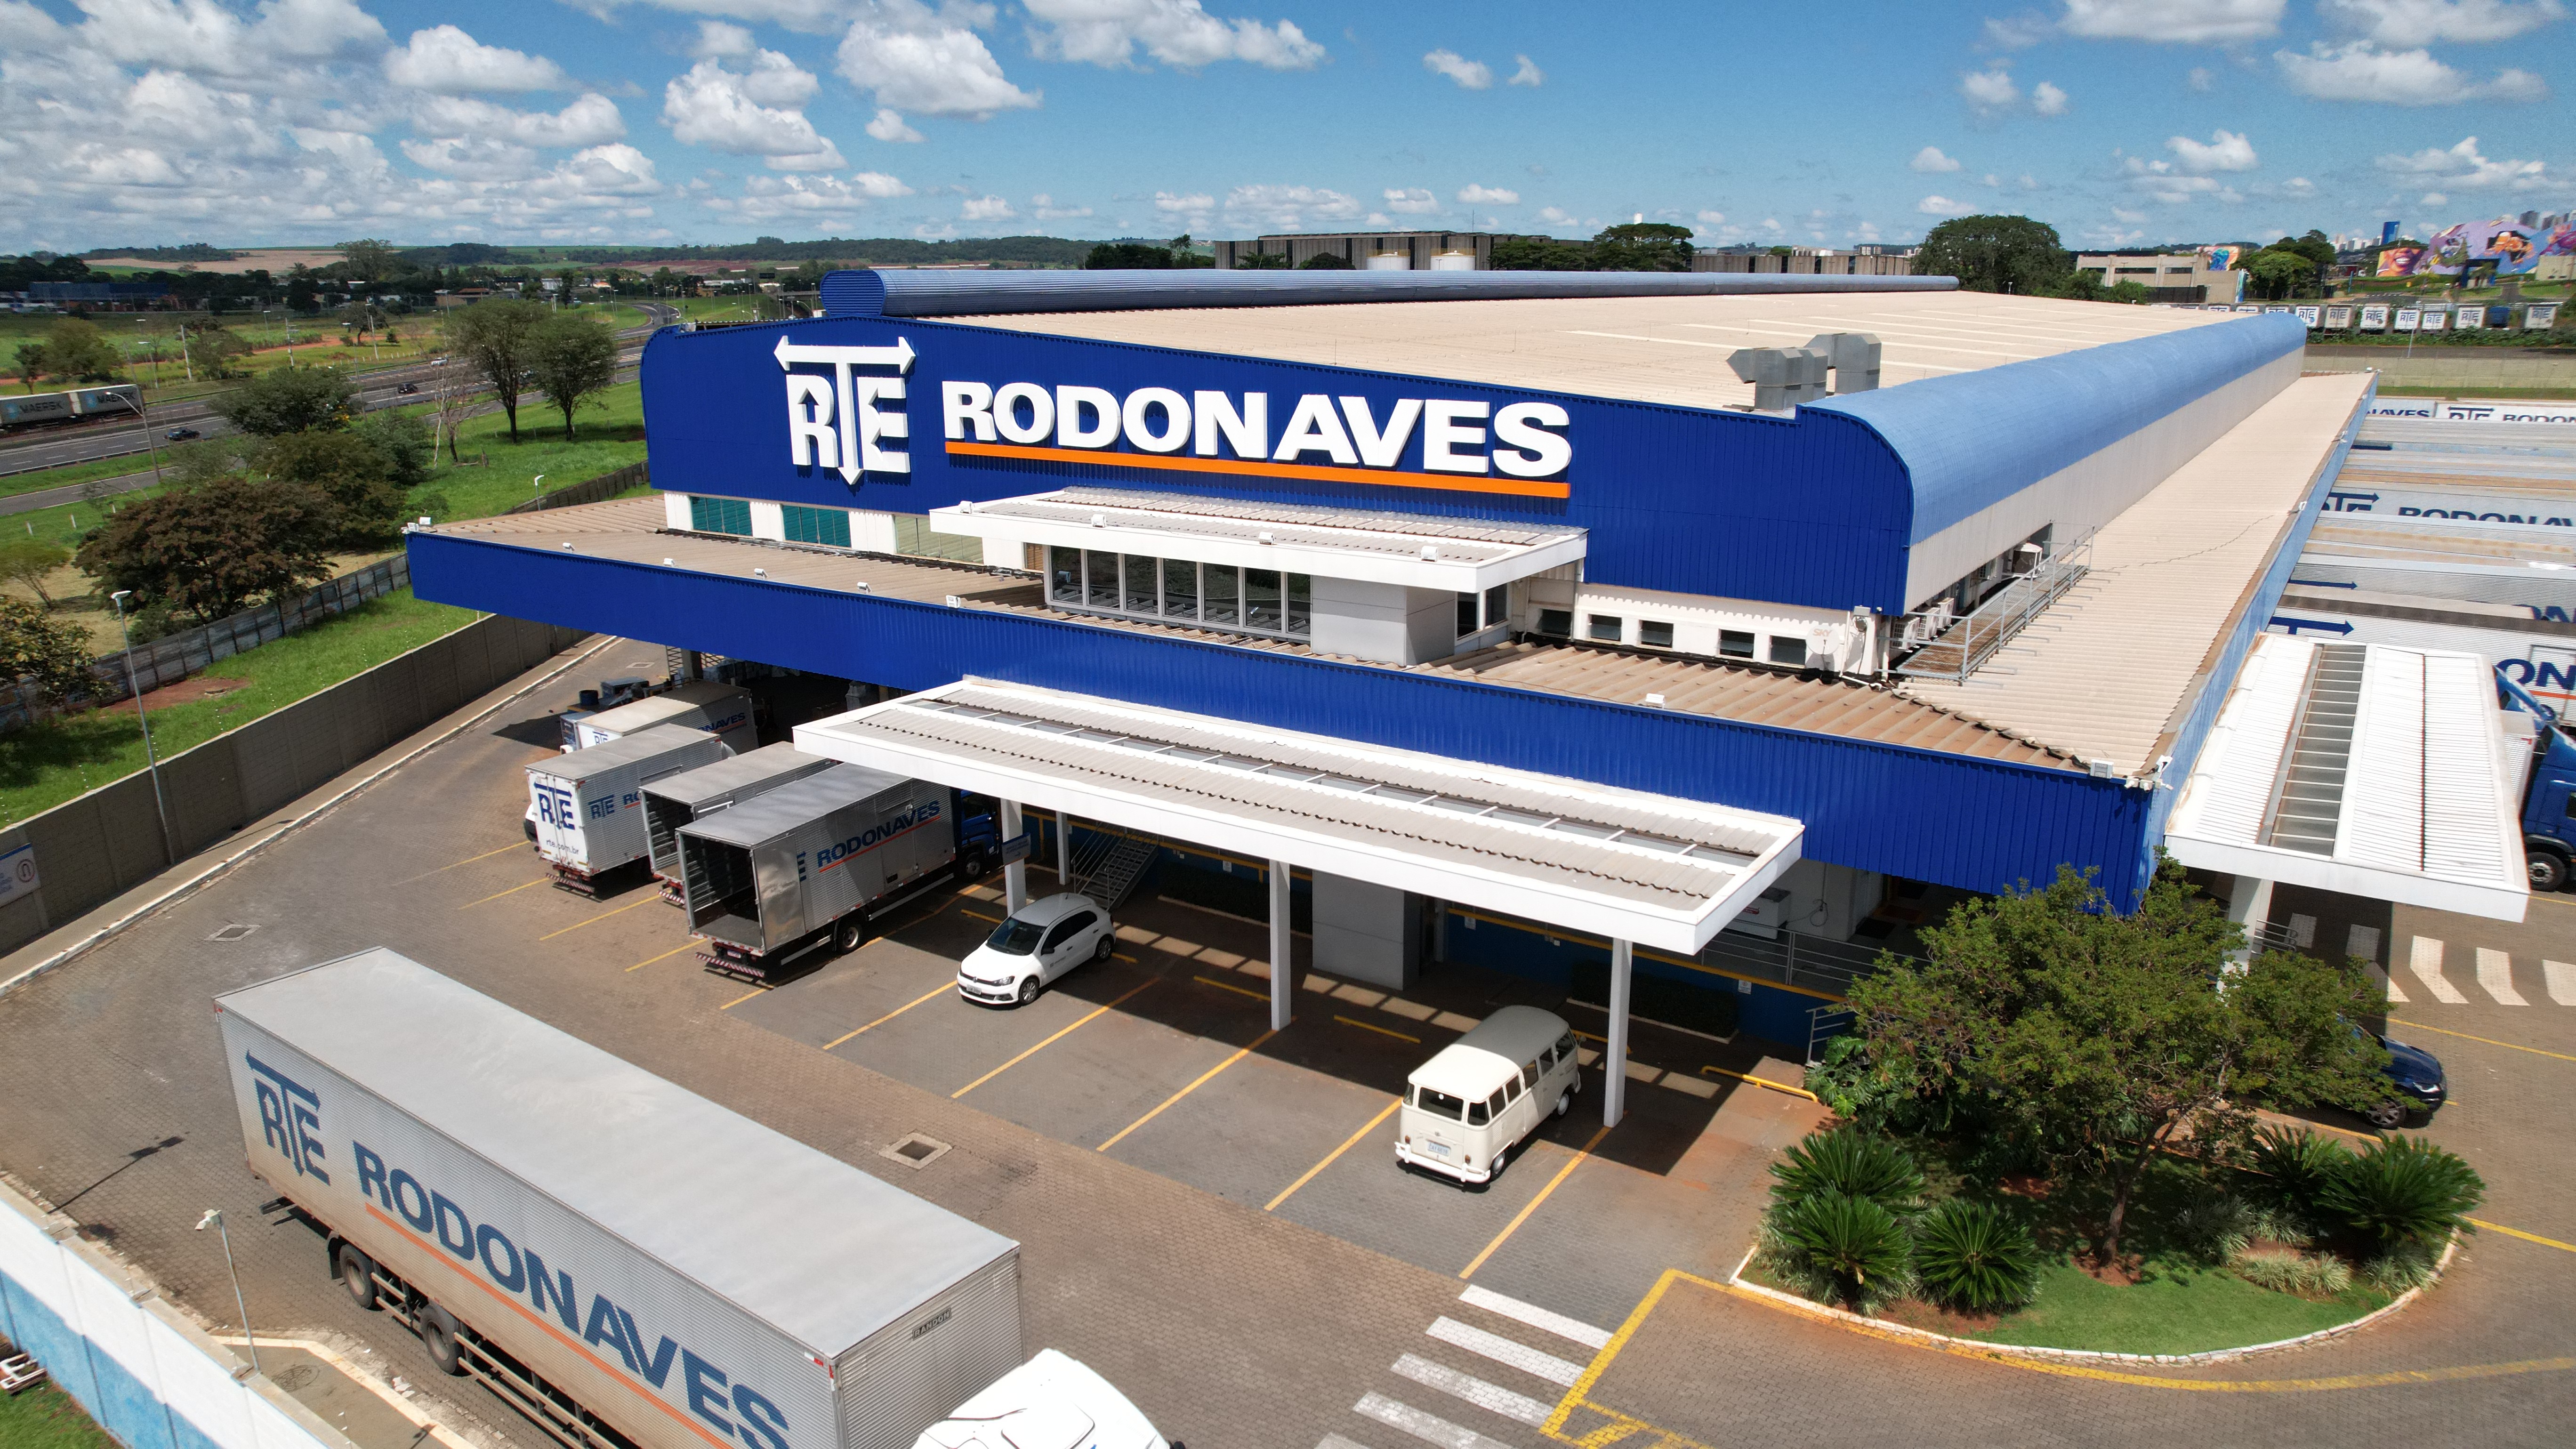 Empresas de transporte estão com 70 vagas abertas em Ribeirão Preto, SP